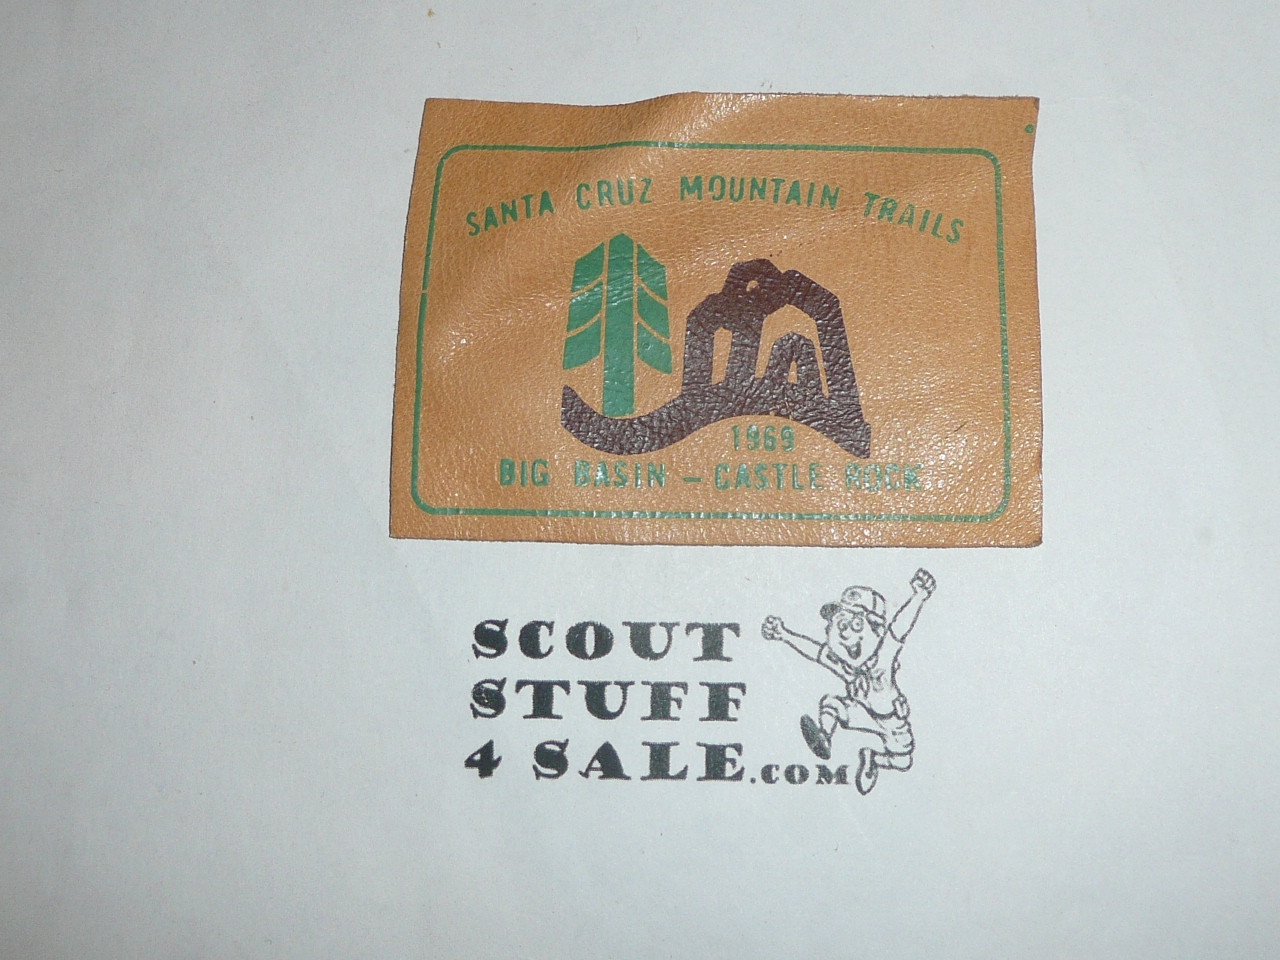 Vintage Santa Cruz Mountains Trails 1969 Travel Souvenir Patch